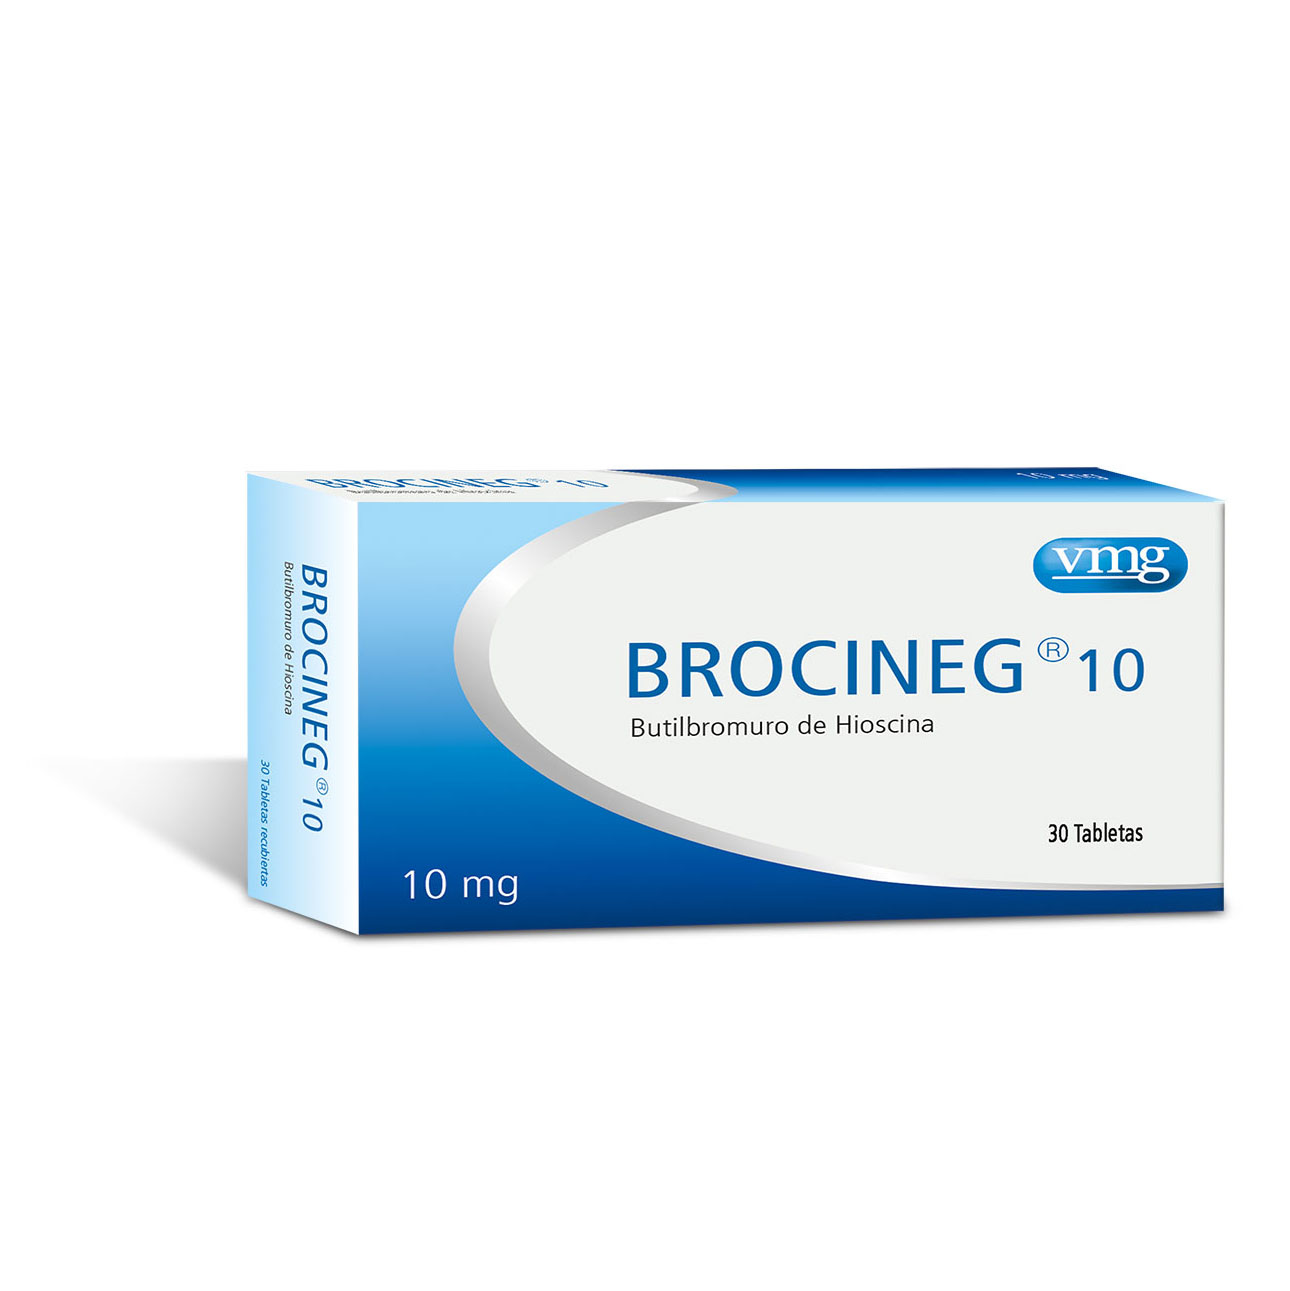 Brocineg® 10